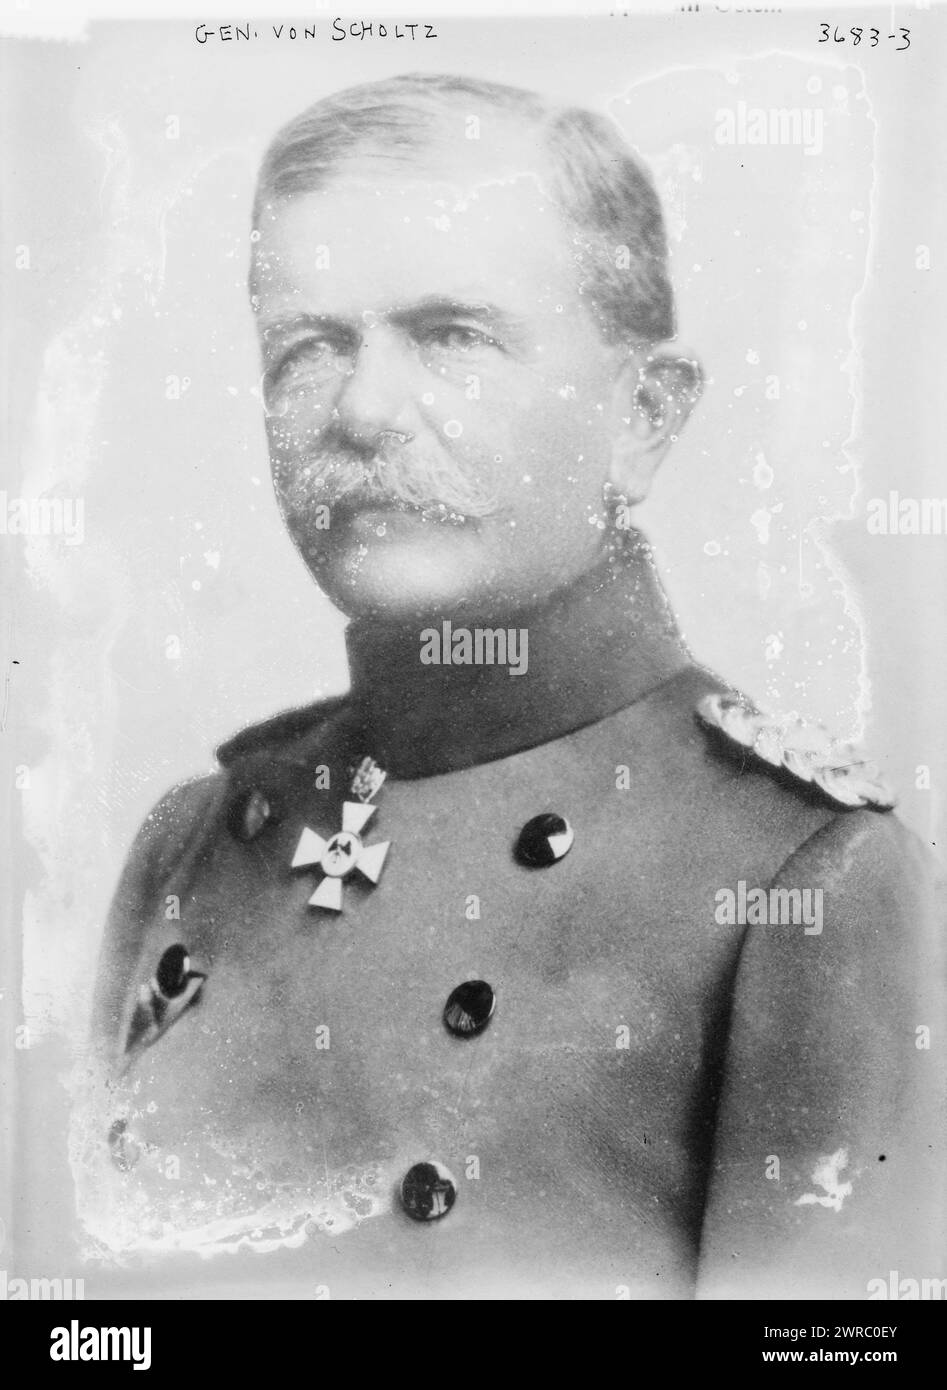 General von Scholtz, 13.12.15, Foto zeigt Porträt des deutschen Generals Friedrich von Scholtz (1851-1927)., 13.12.15, Glasnegative, 1 negativ: Glas Stockfoto